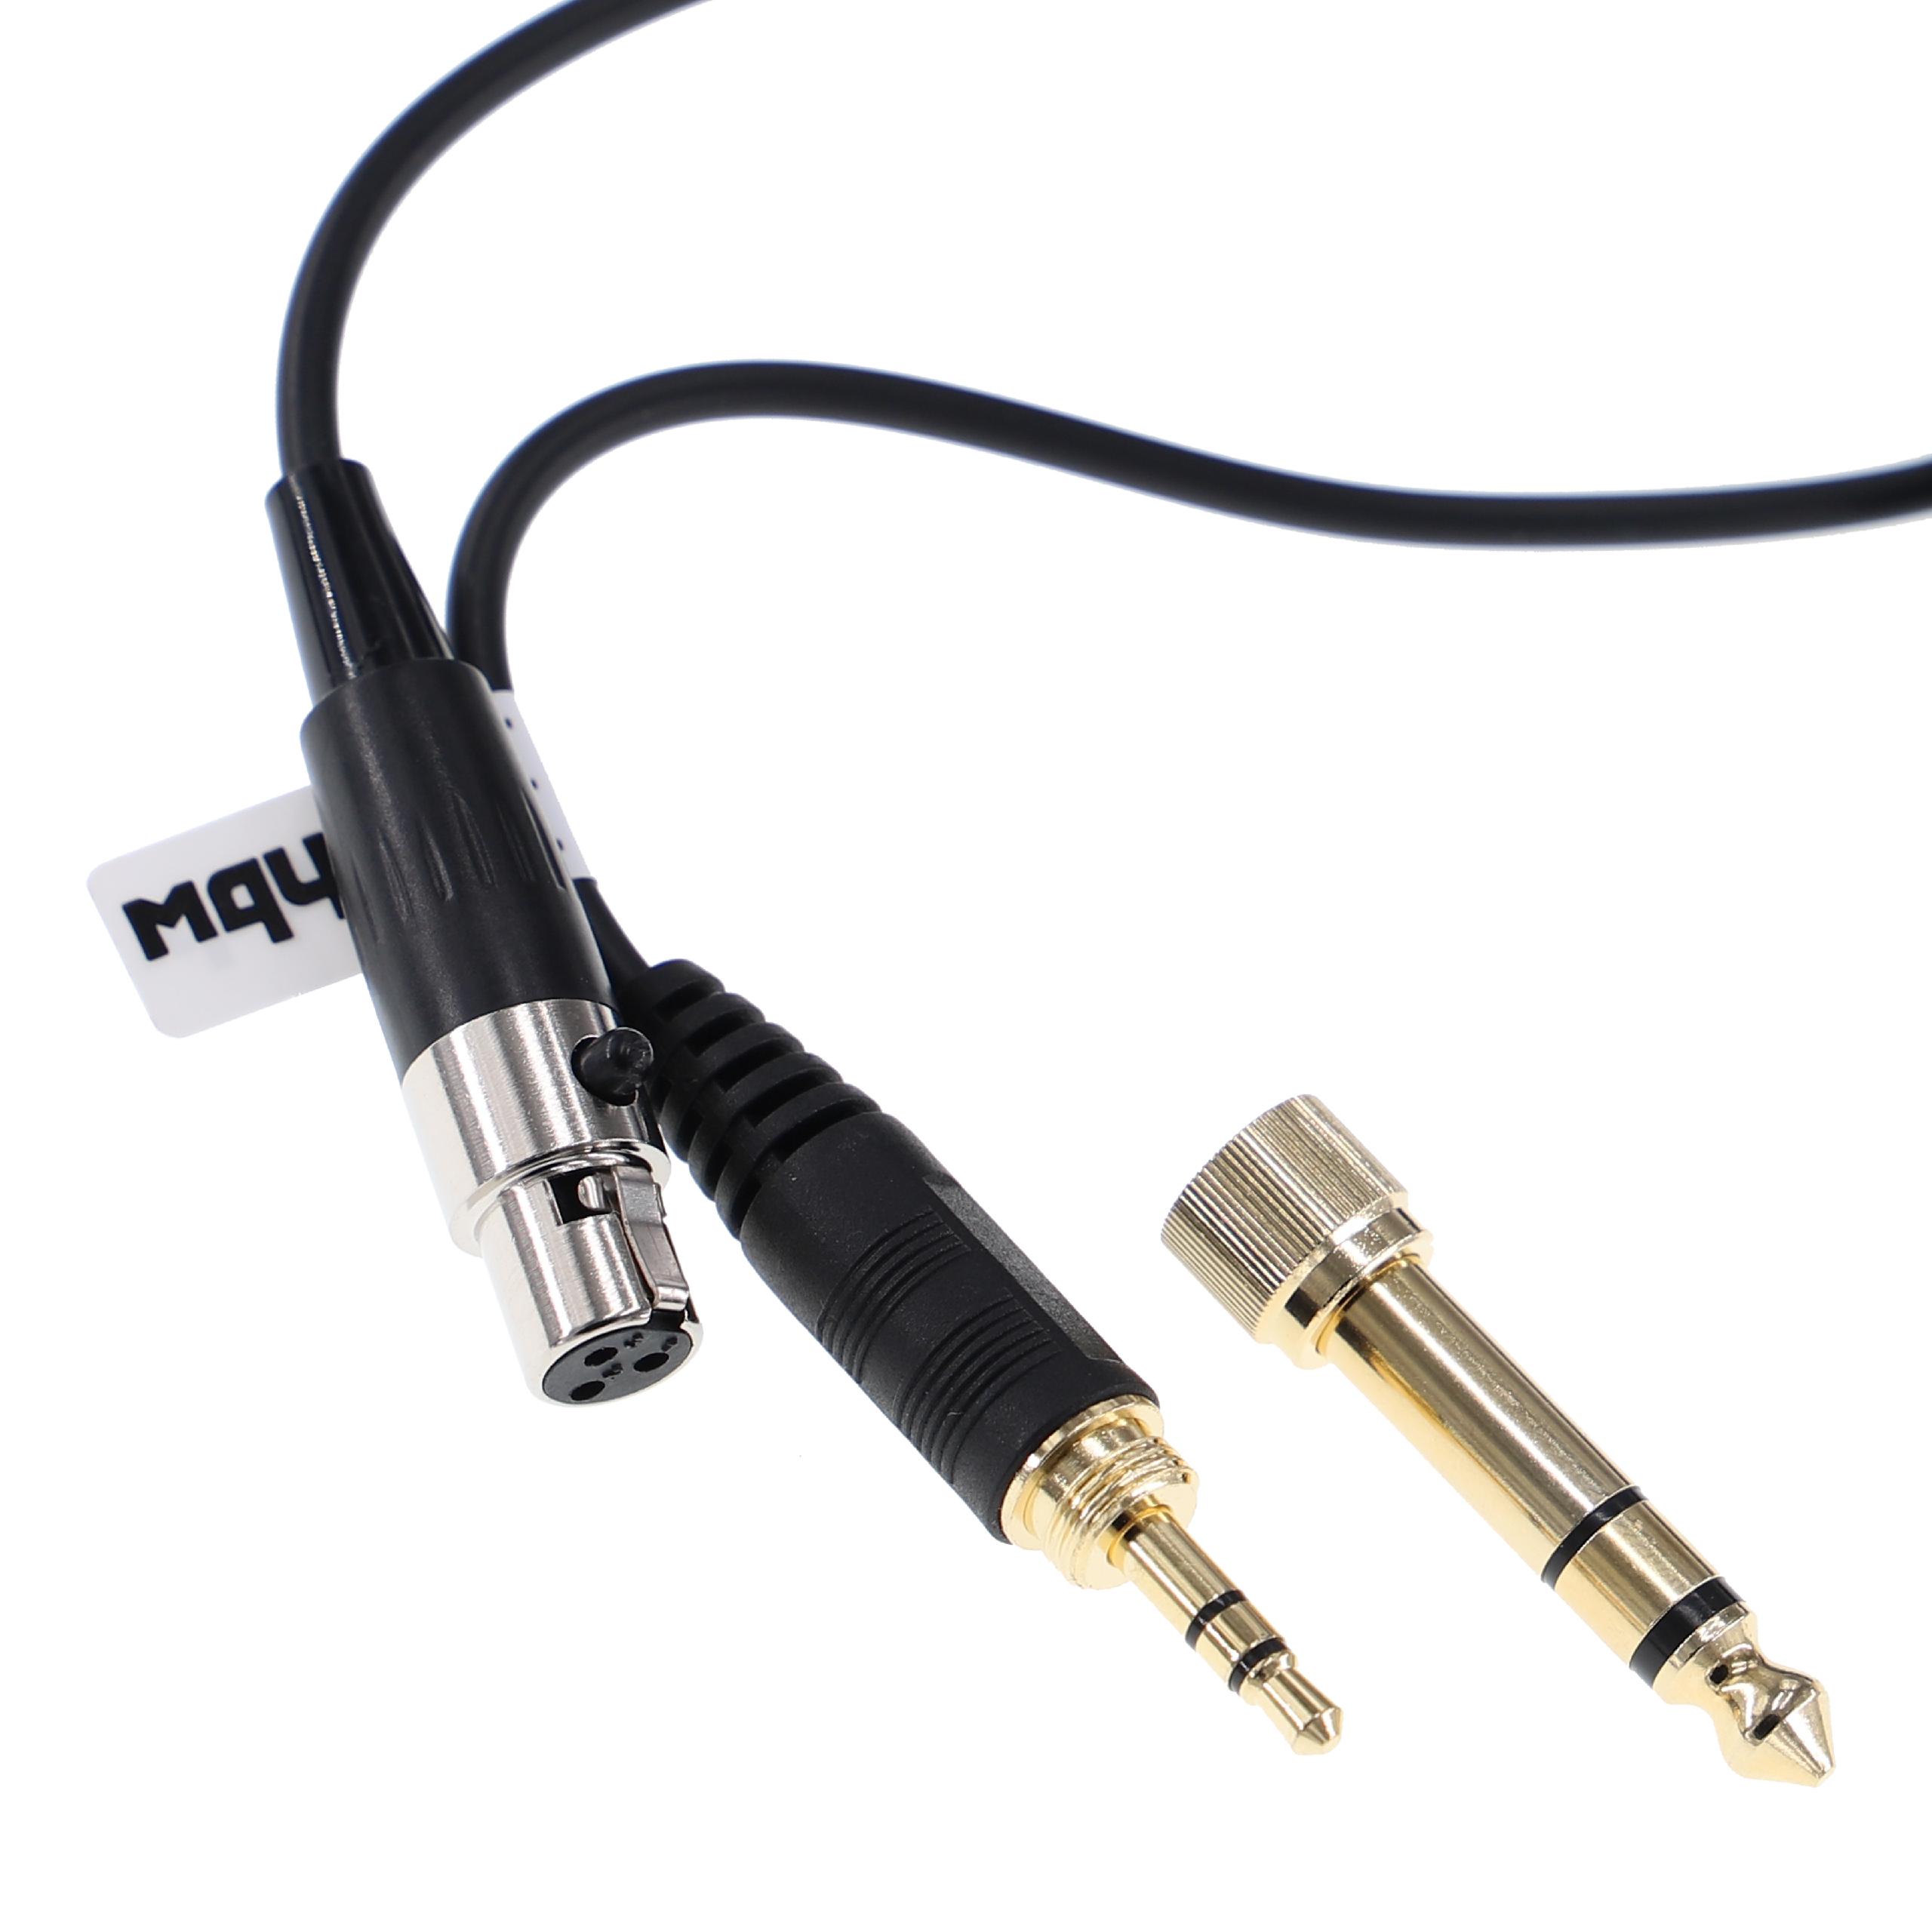 Kopfhörer Kabel passend für AKG, Pioneer K240 MK II u.a., 3 m, schwarz